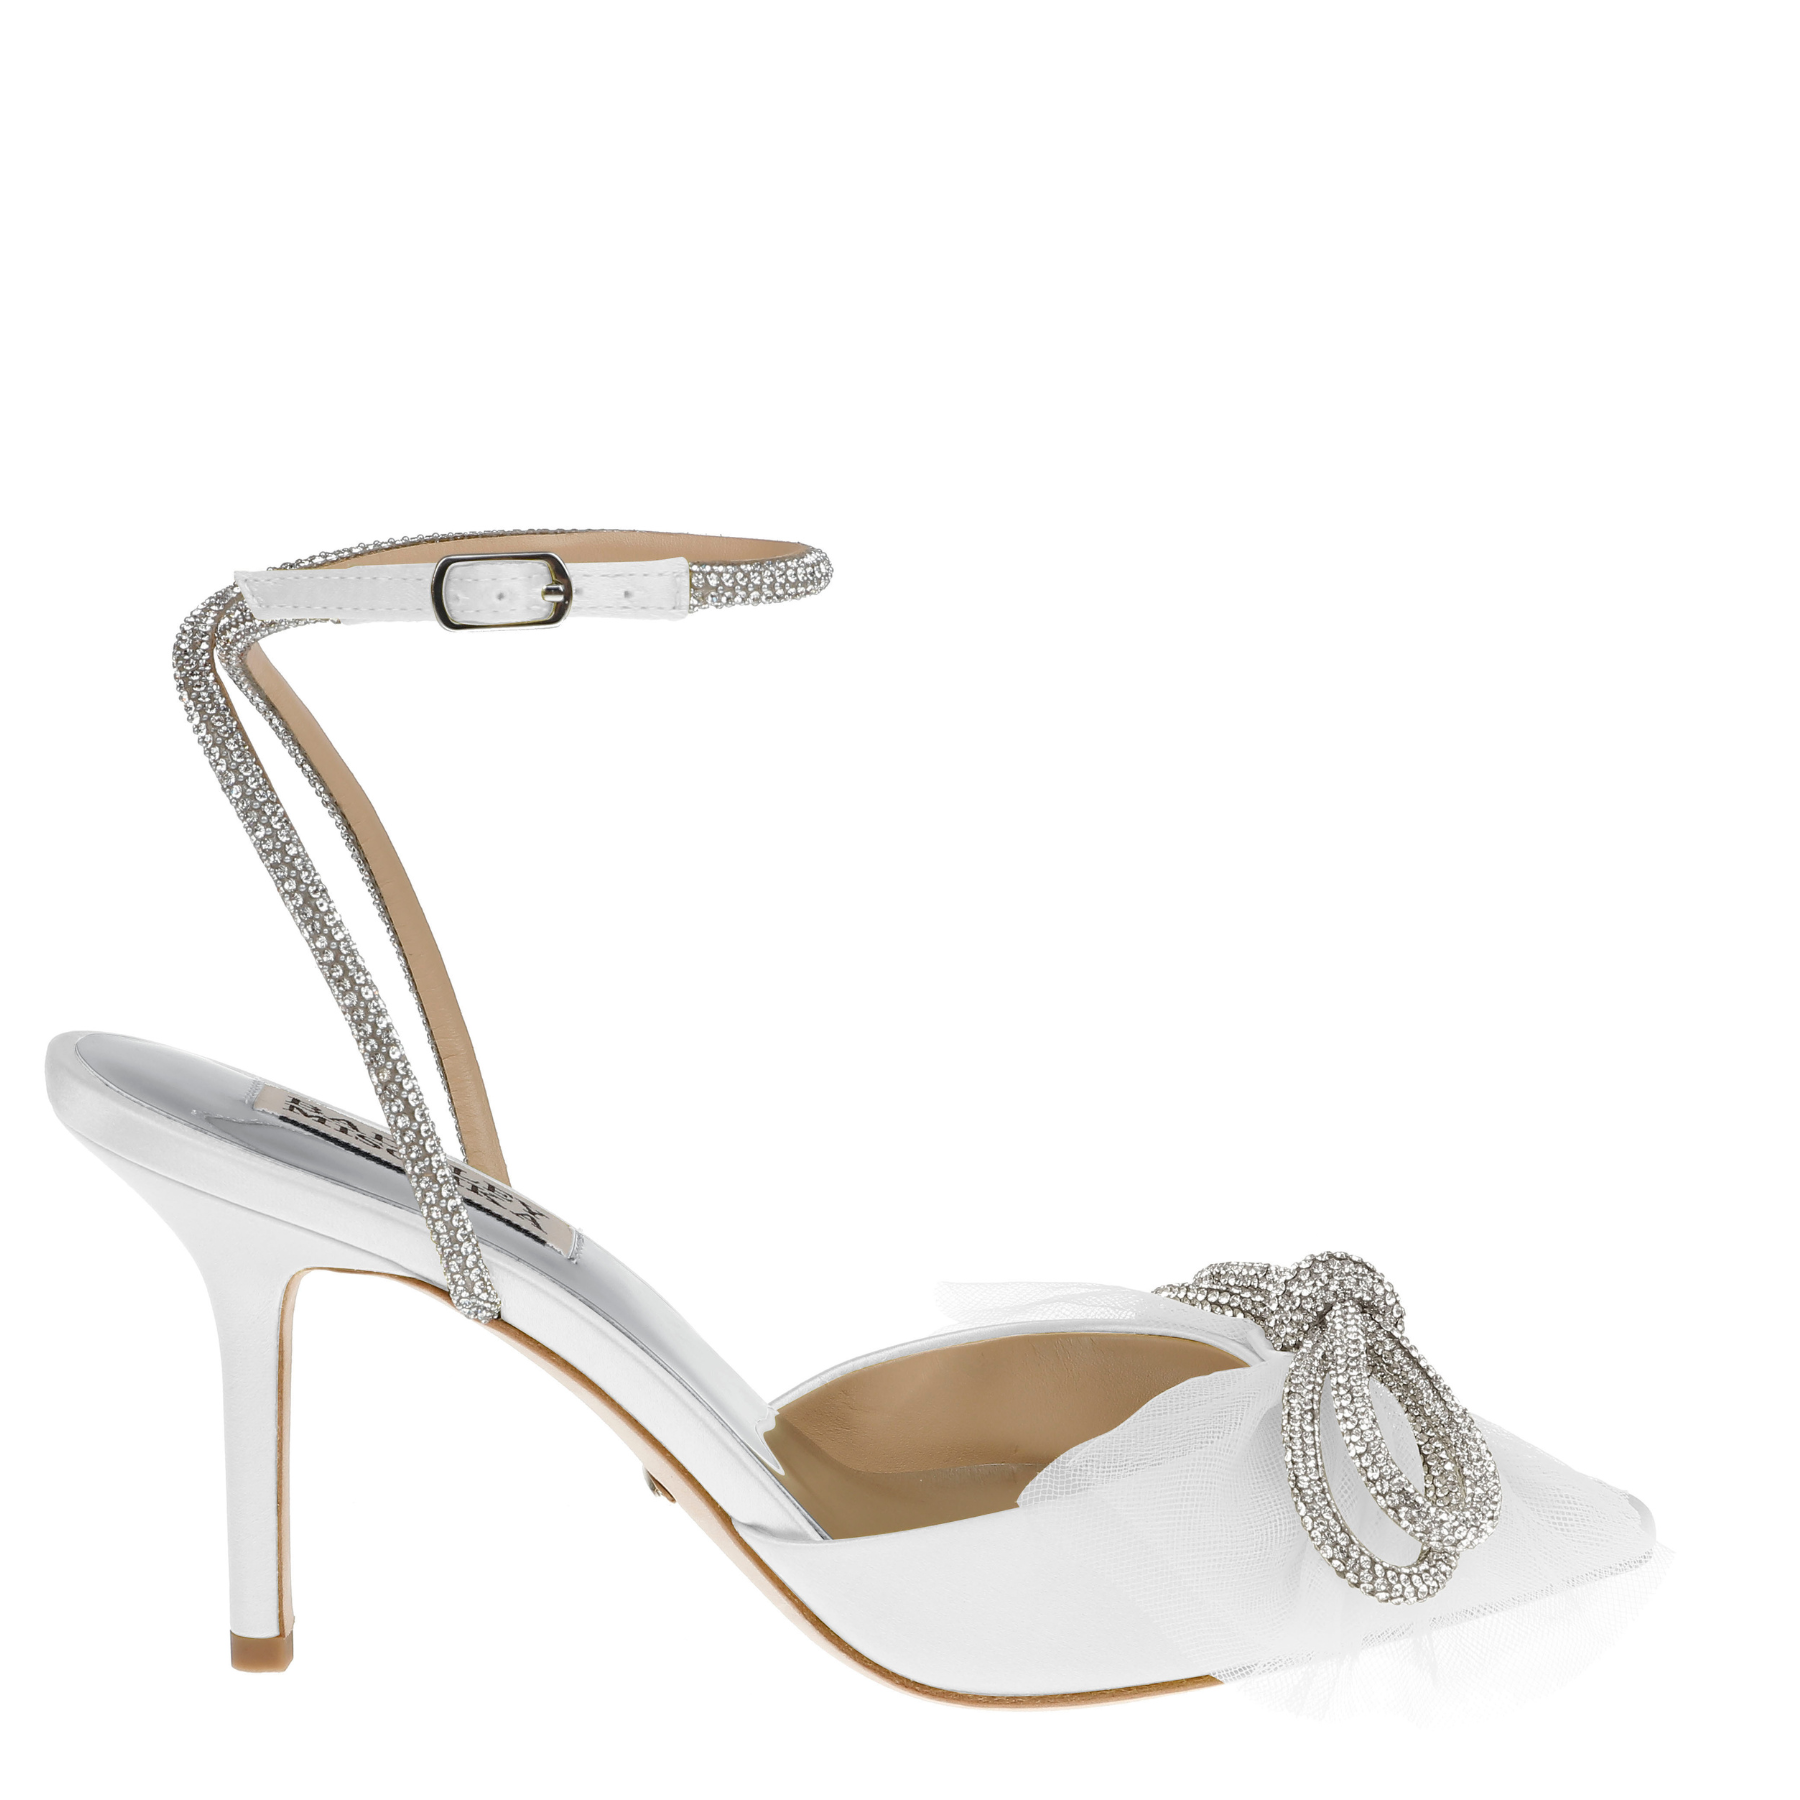 Badgley Mischka Bridal Shoes, Stunning Badgley Mischka Wedding Shoes